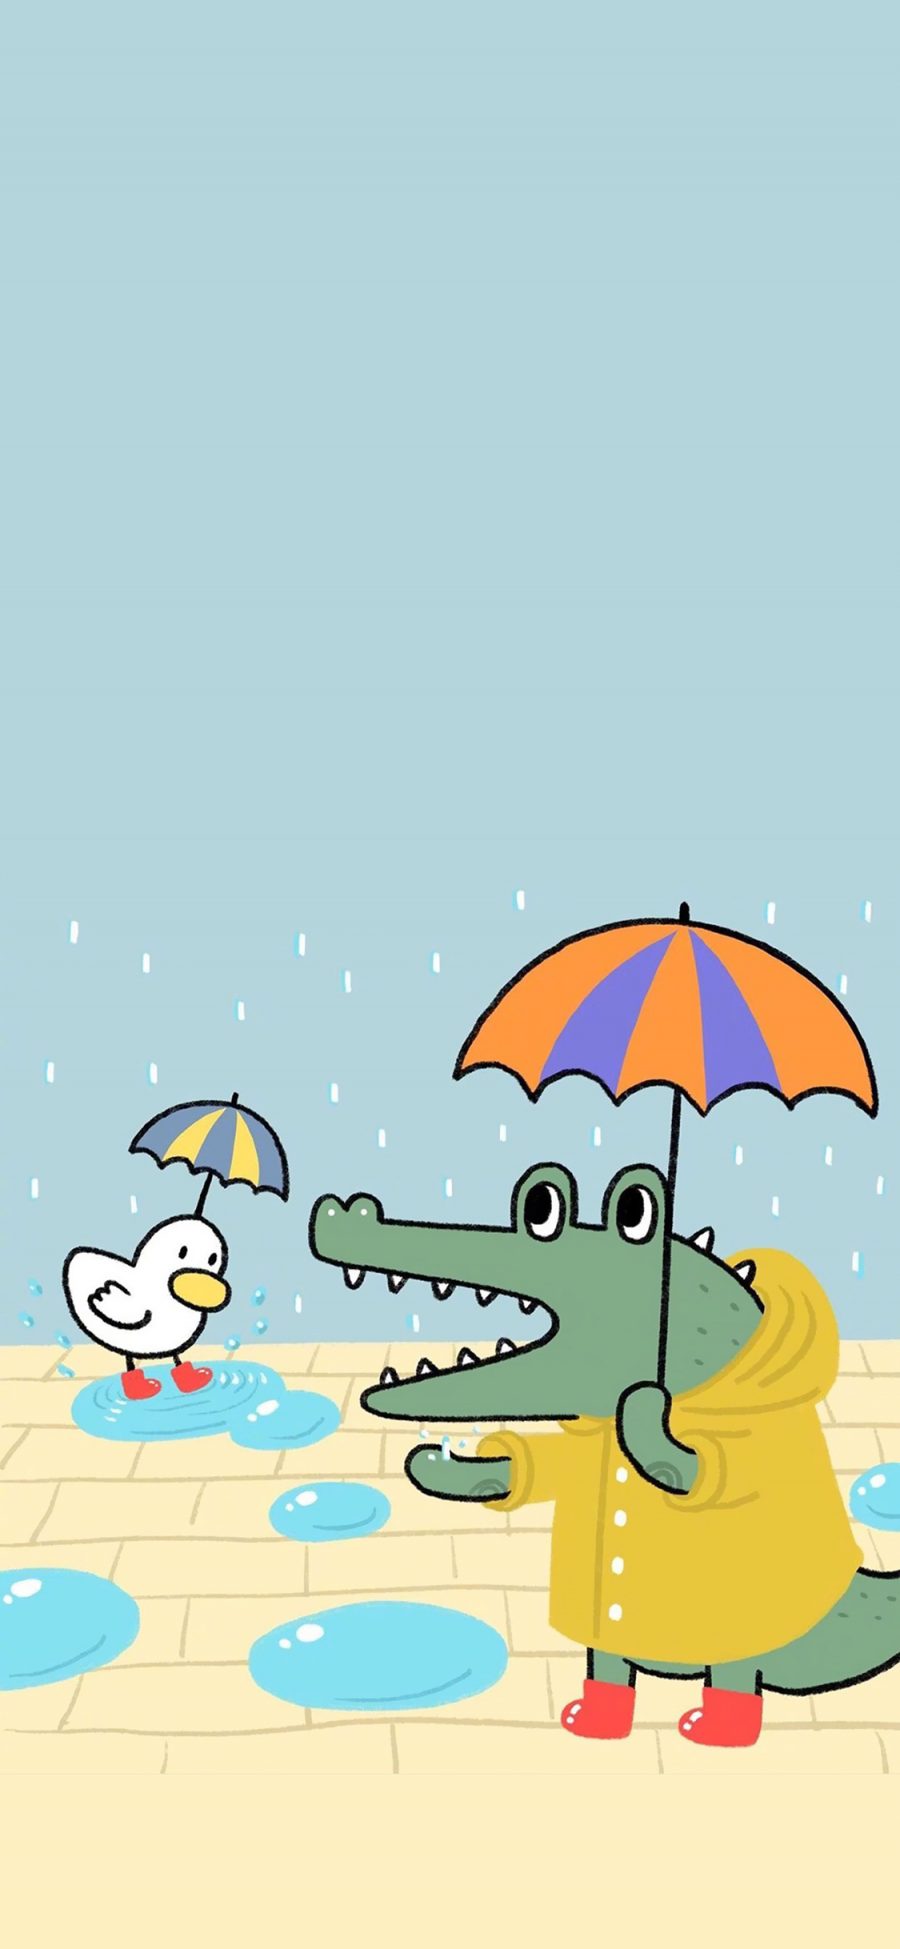 [2436×1125]插画 鳄鱼 鸭子 卡通 苹果手机动漫壁纸图片